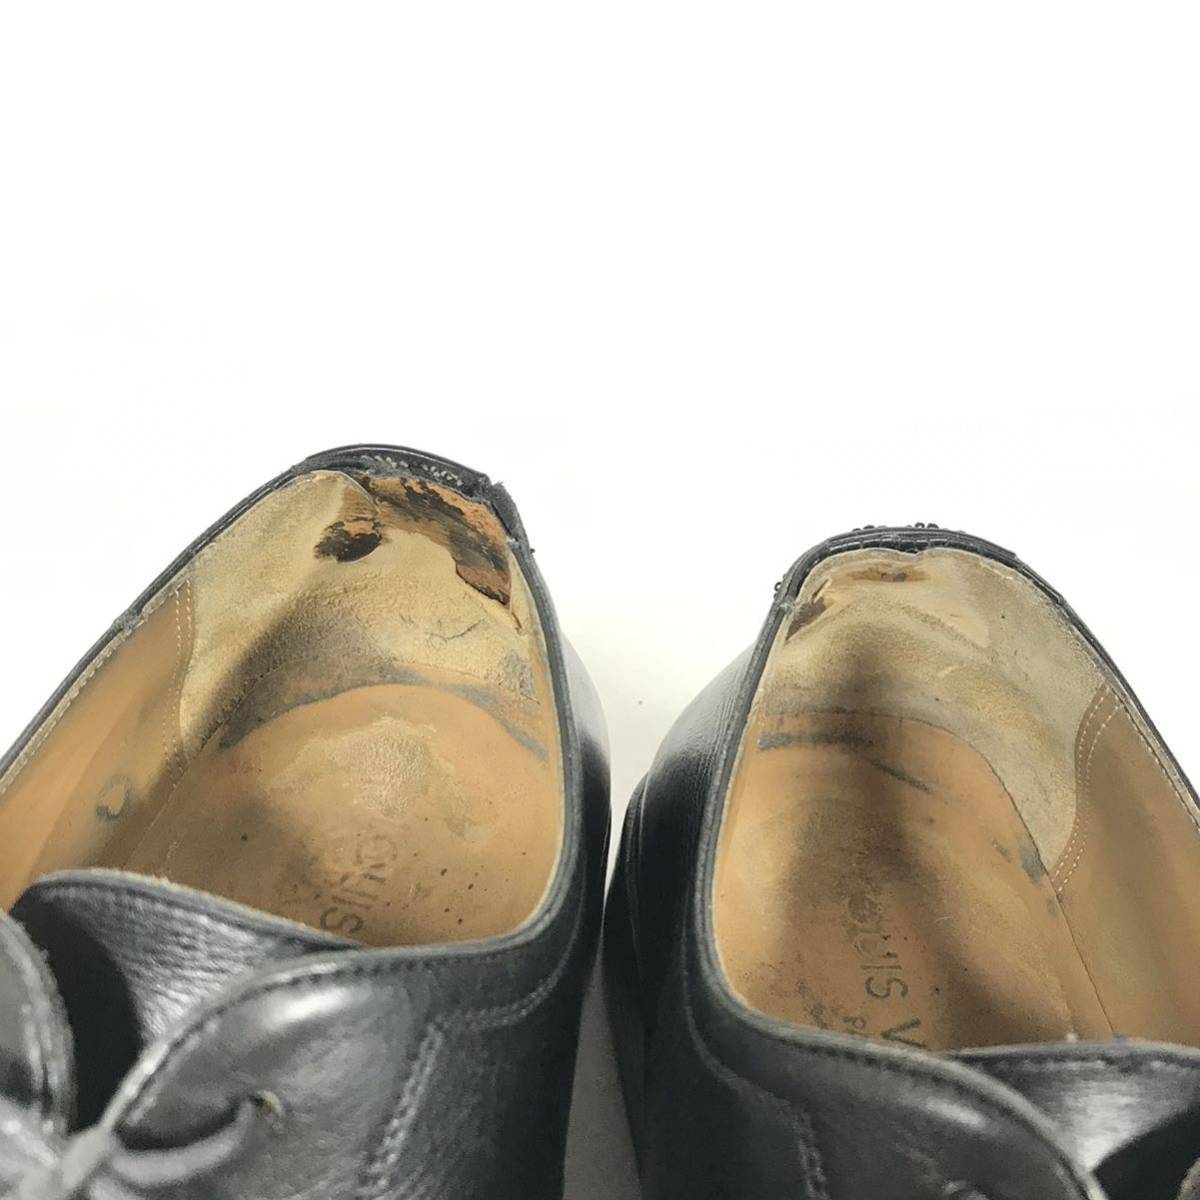 【ルイヴィトン】本物 LOUIS VUITTON 靴 26.5cm 黒 ビジネスシューズ 外羽根式 本革 レザー 男性用 メンズ イタリア製 8_画像8